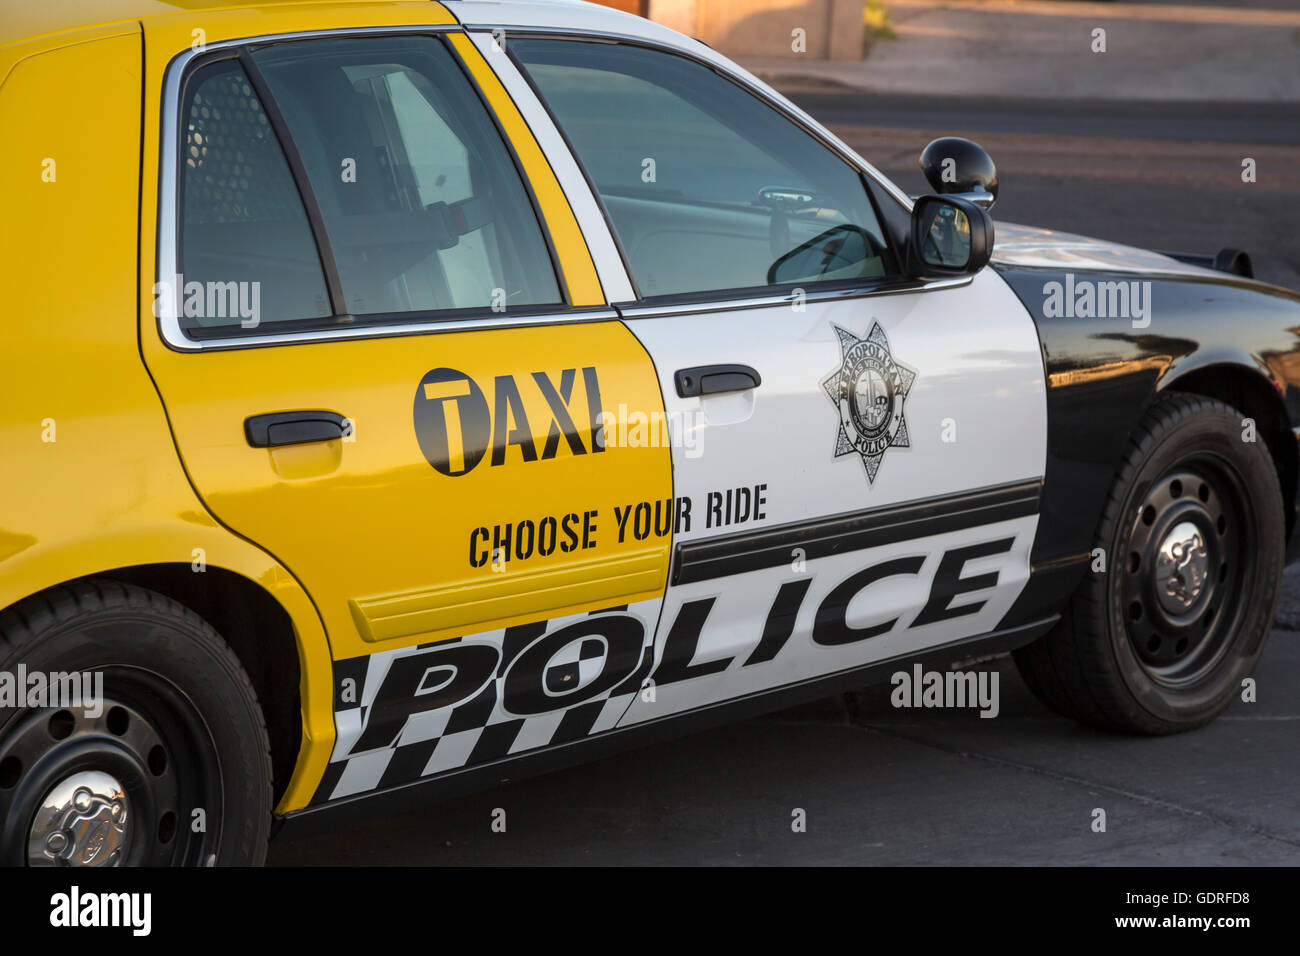 Las Vegas, Nevada - une voiture de police partiellement peint comme un taxi, dans le cadre d'une campagne contre l'alcool au volant. Banque D'Images